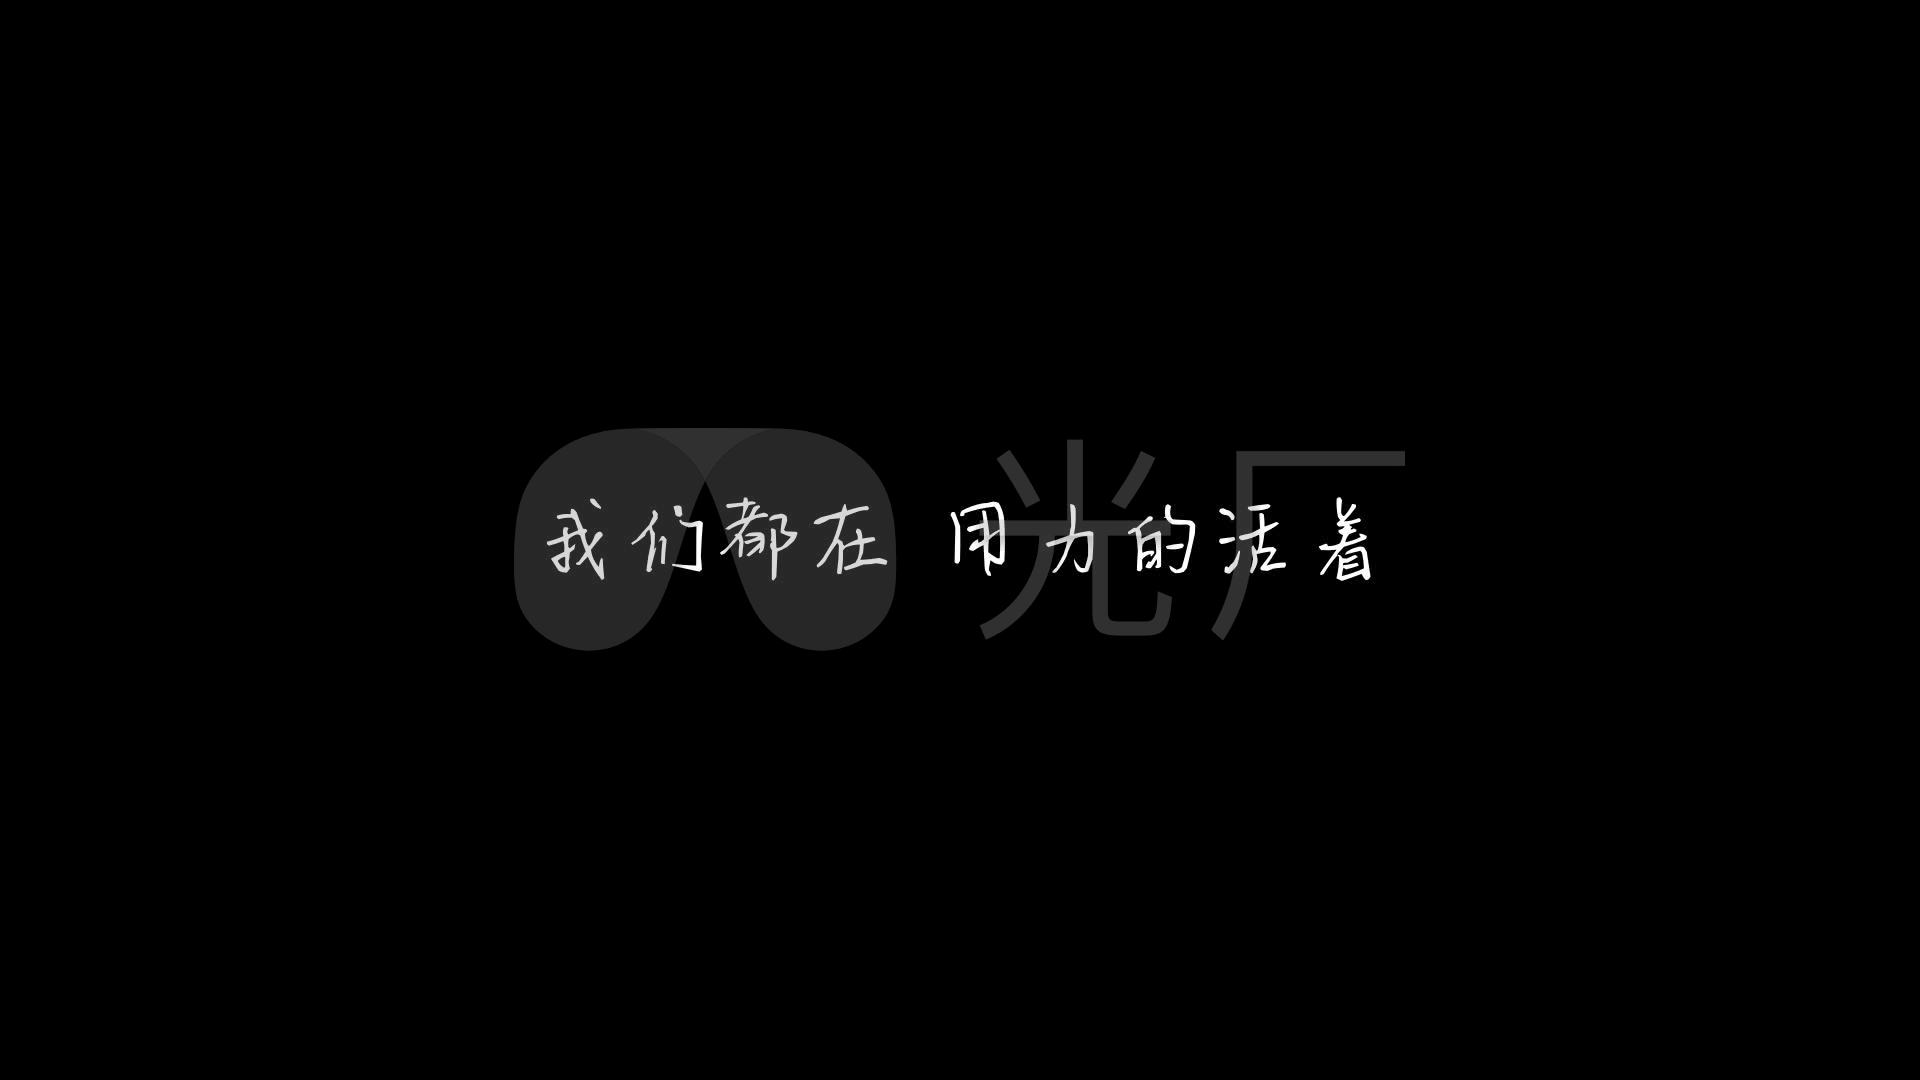 张茜-《用力活着》(1080p)_视频素材包下载(编号:)